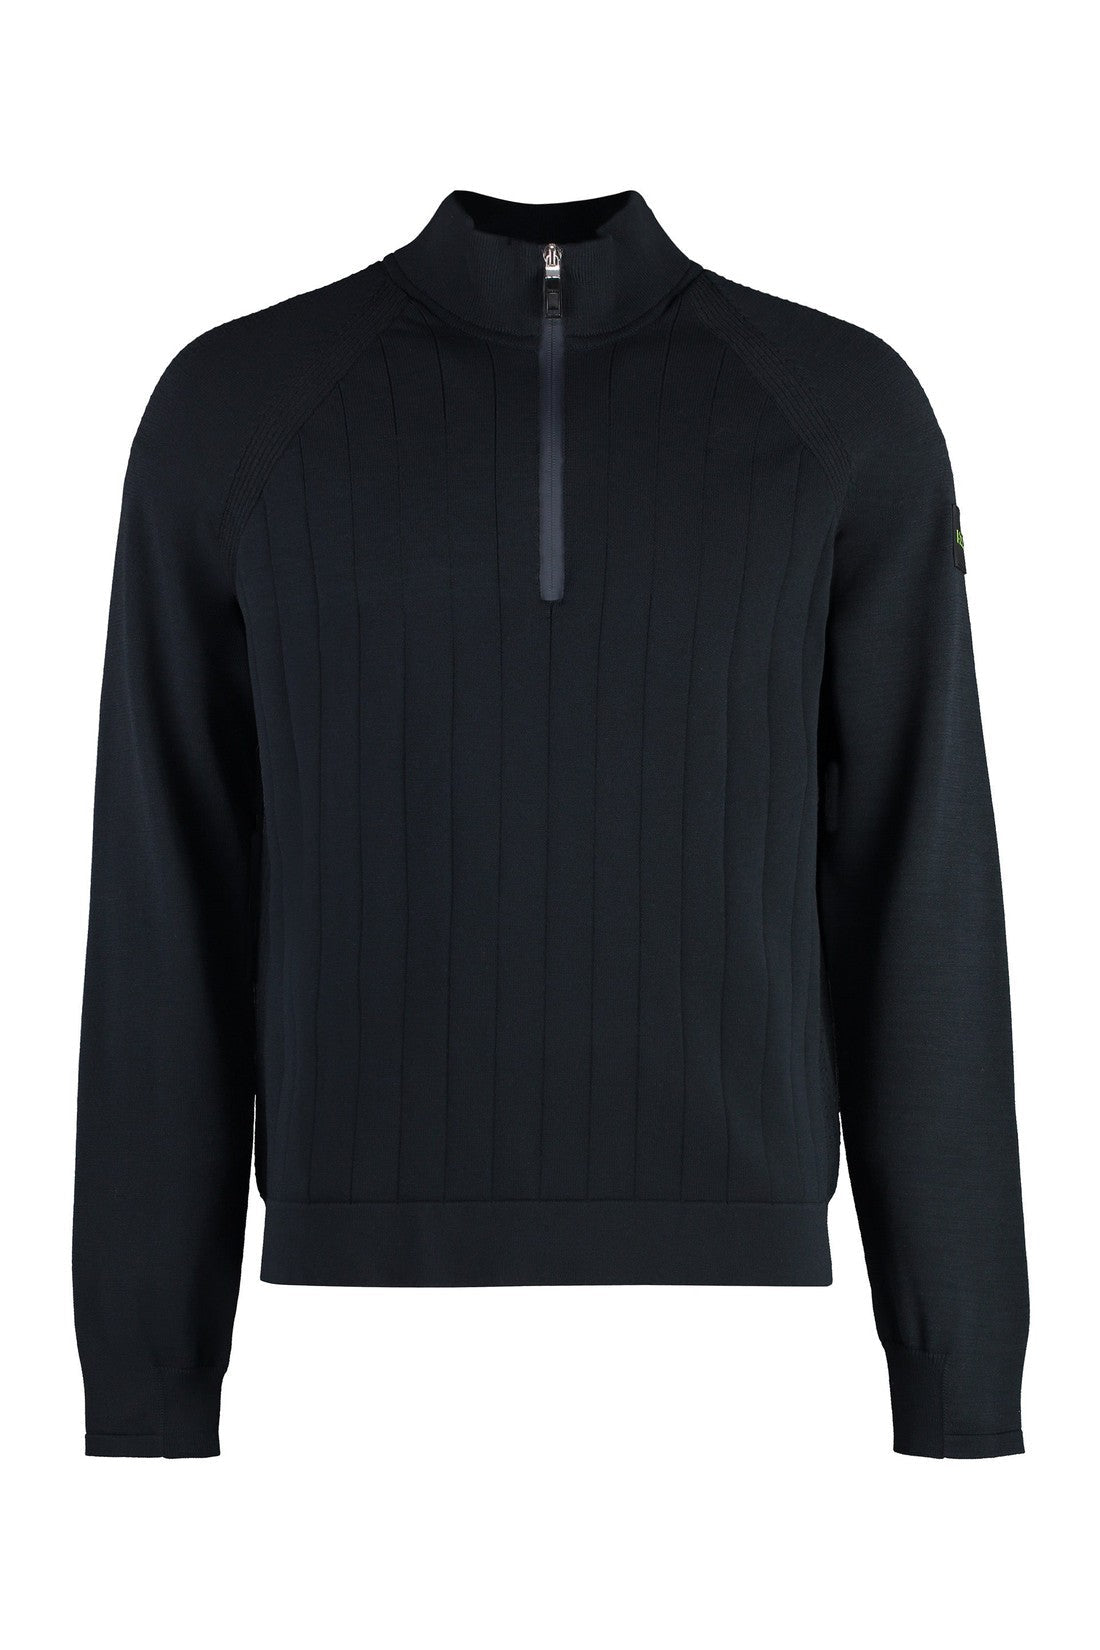 BOSS-OUTLET-SALE-Cotton blend turtleneck sweater-ARCHIVIST